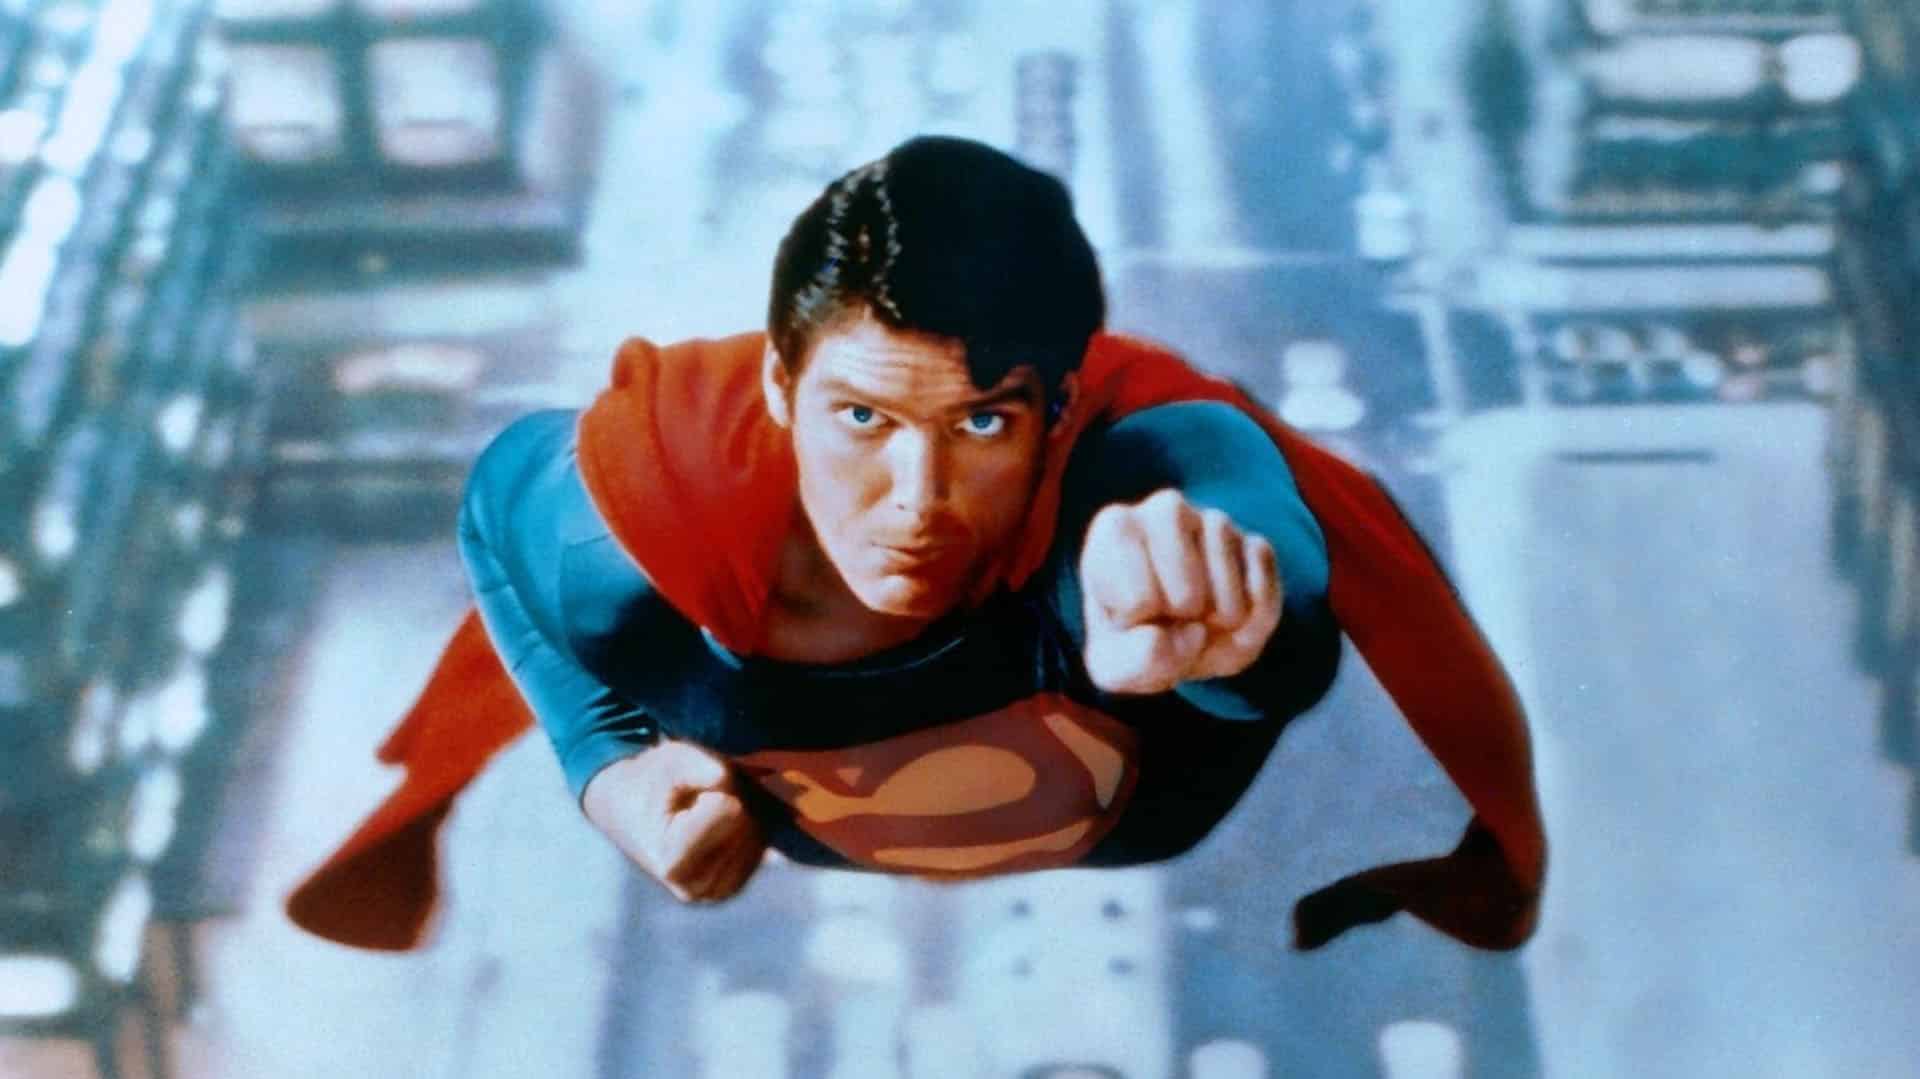 Un día como hoy, Superman “voló” desde Chile de regreso a su país